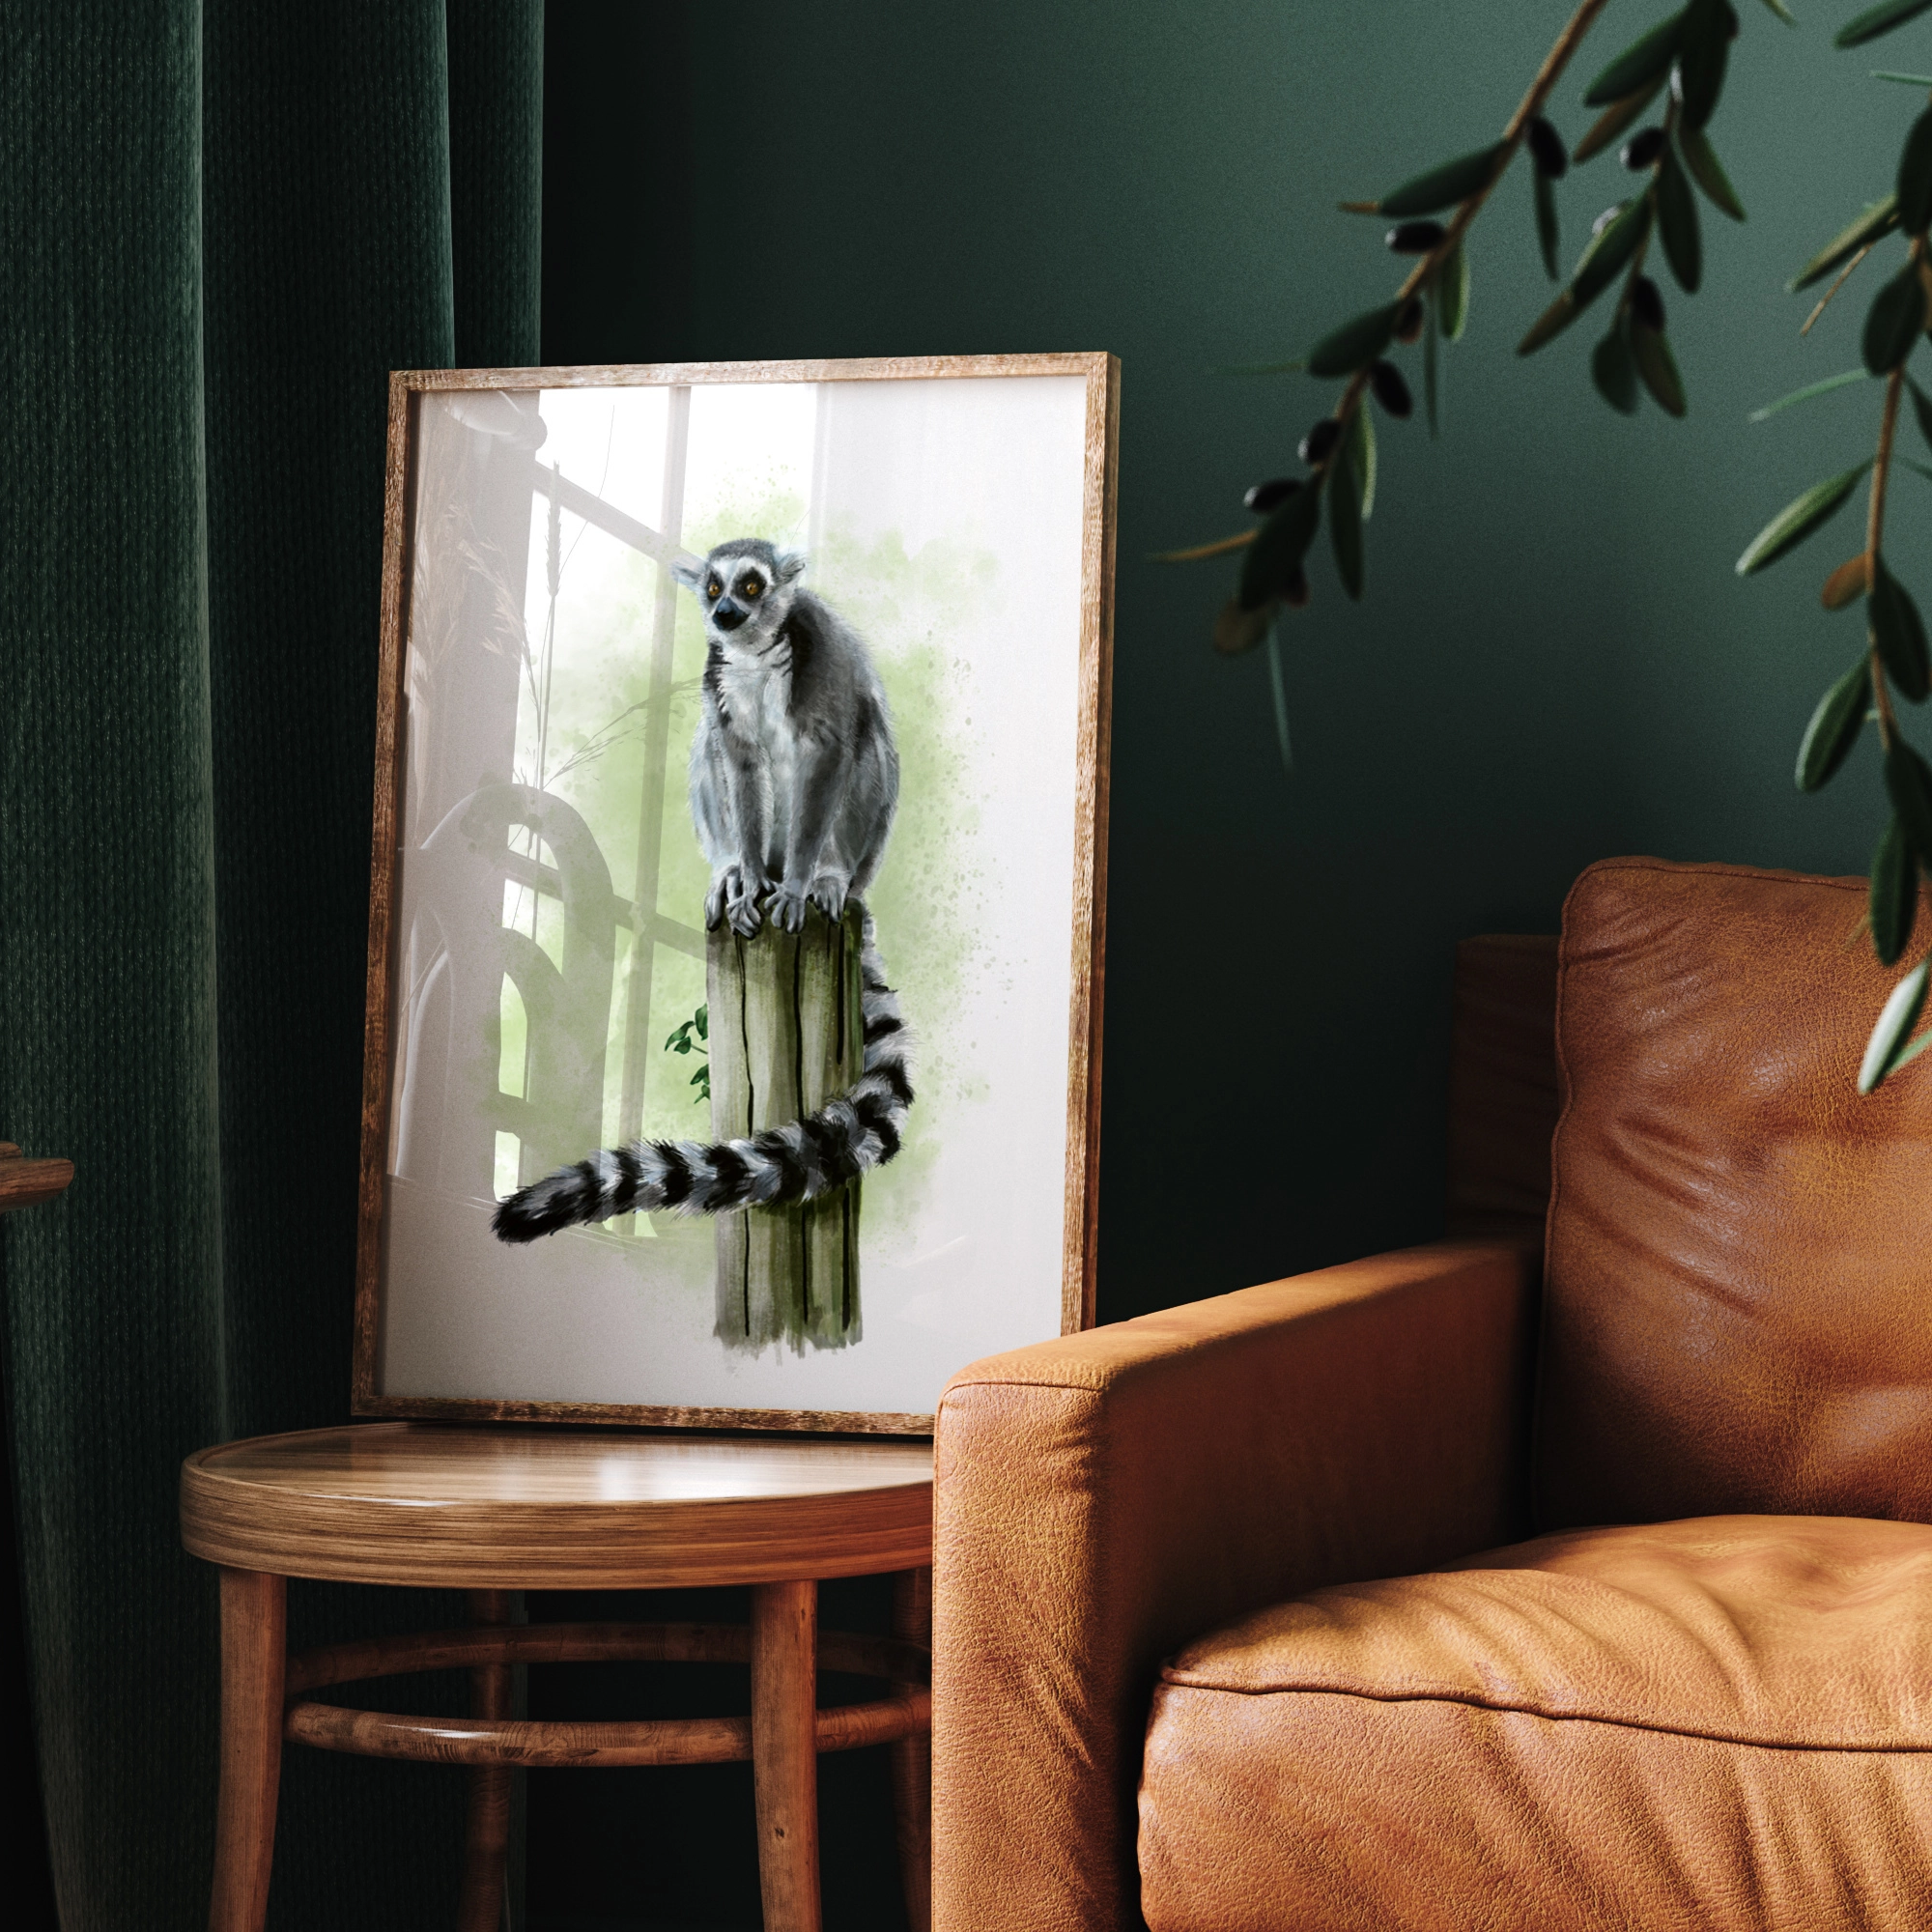 Image d'un cadre à la bordure noire avec une finition brillante, posé sur un meuble zébré. Le meuble est un mélange de bleu et de vert, orné d'un bouquet de fleurs. À l'intérieur du cadre se trouve une illustration colorée d'un lémurien assis sur un poteau en bois.